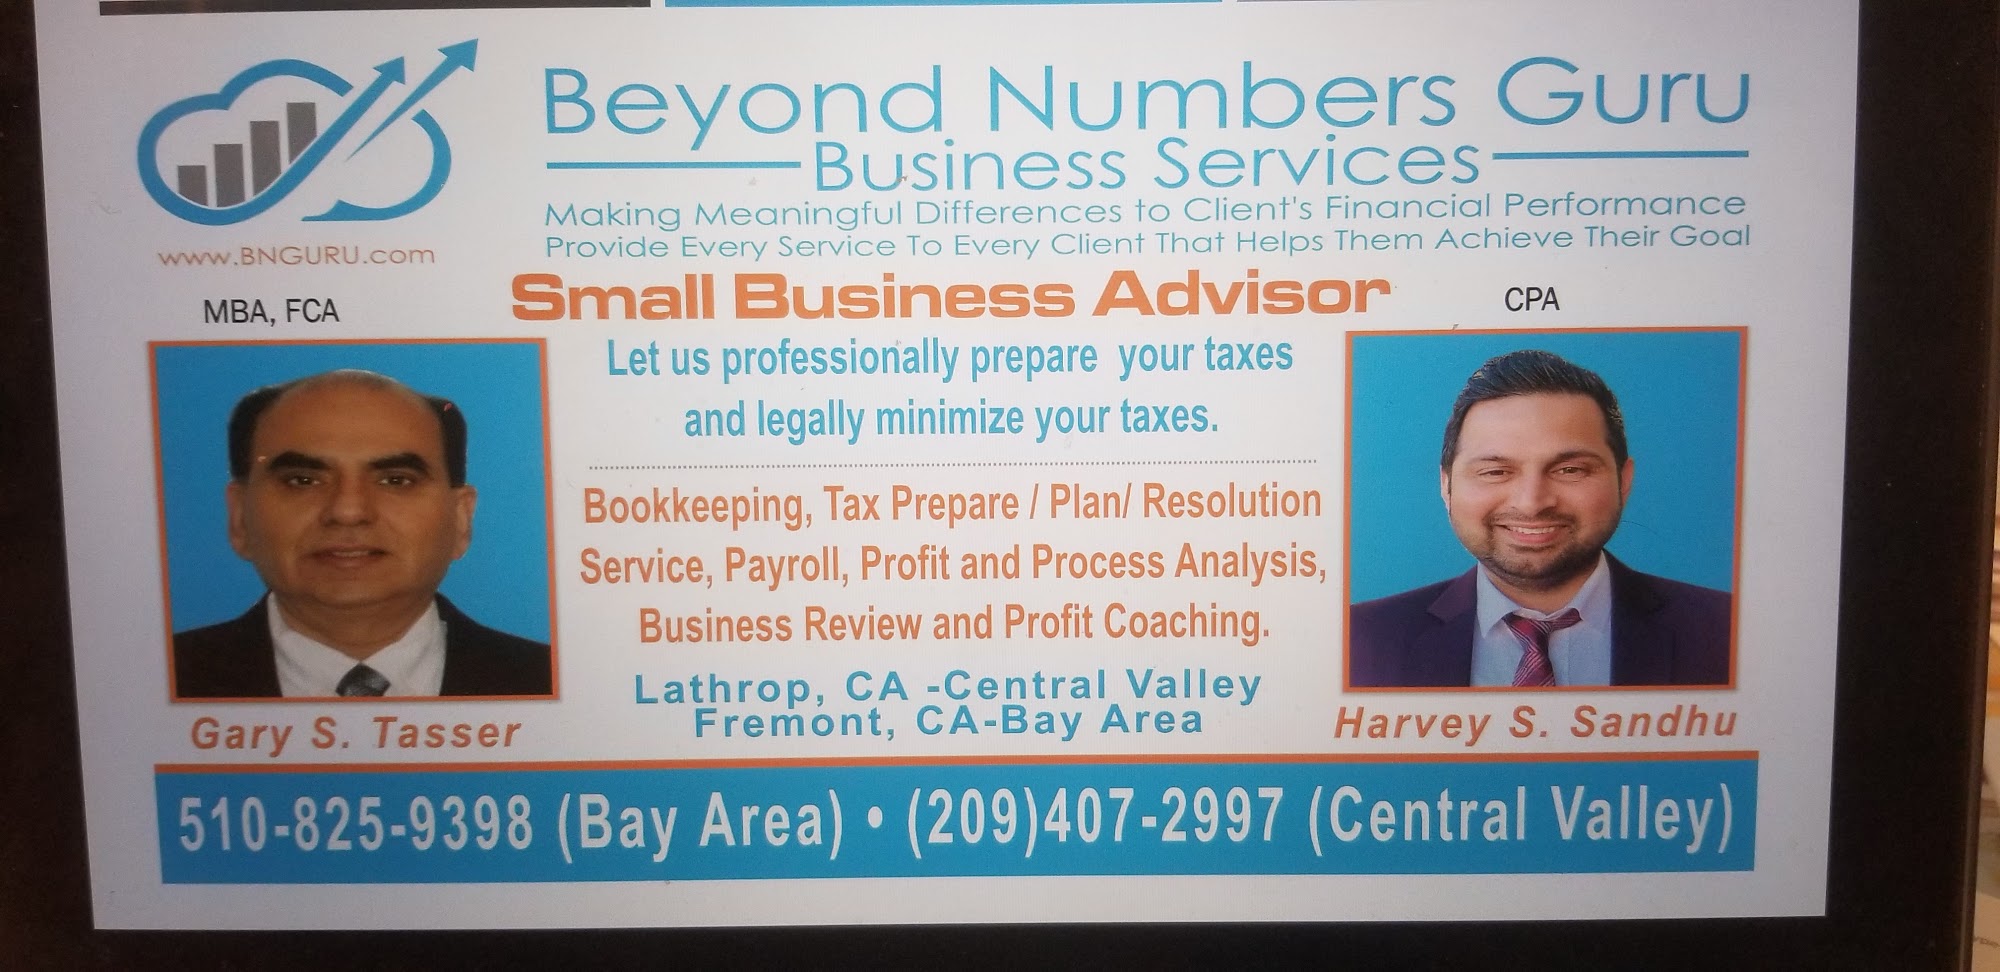 Beyond Numbers Guru Business Services